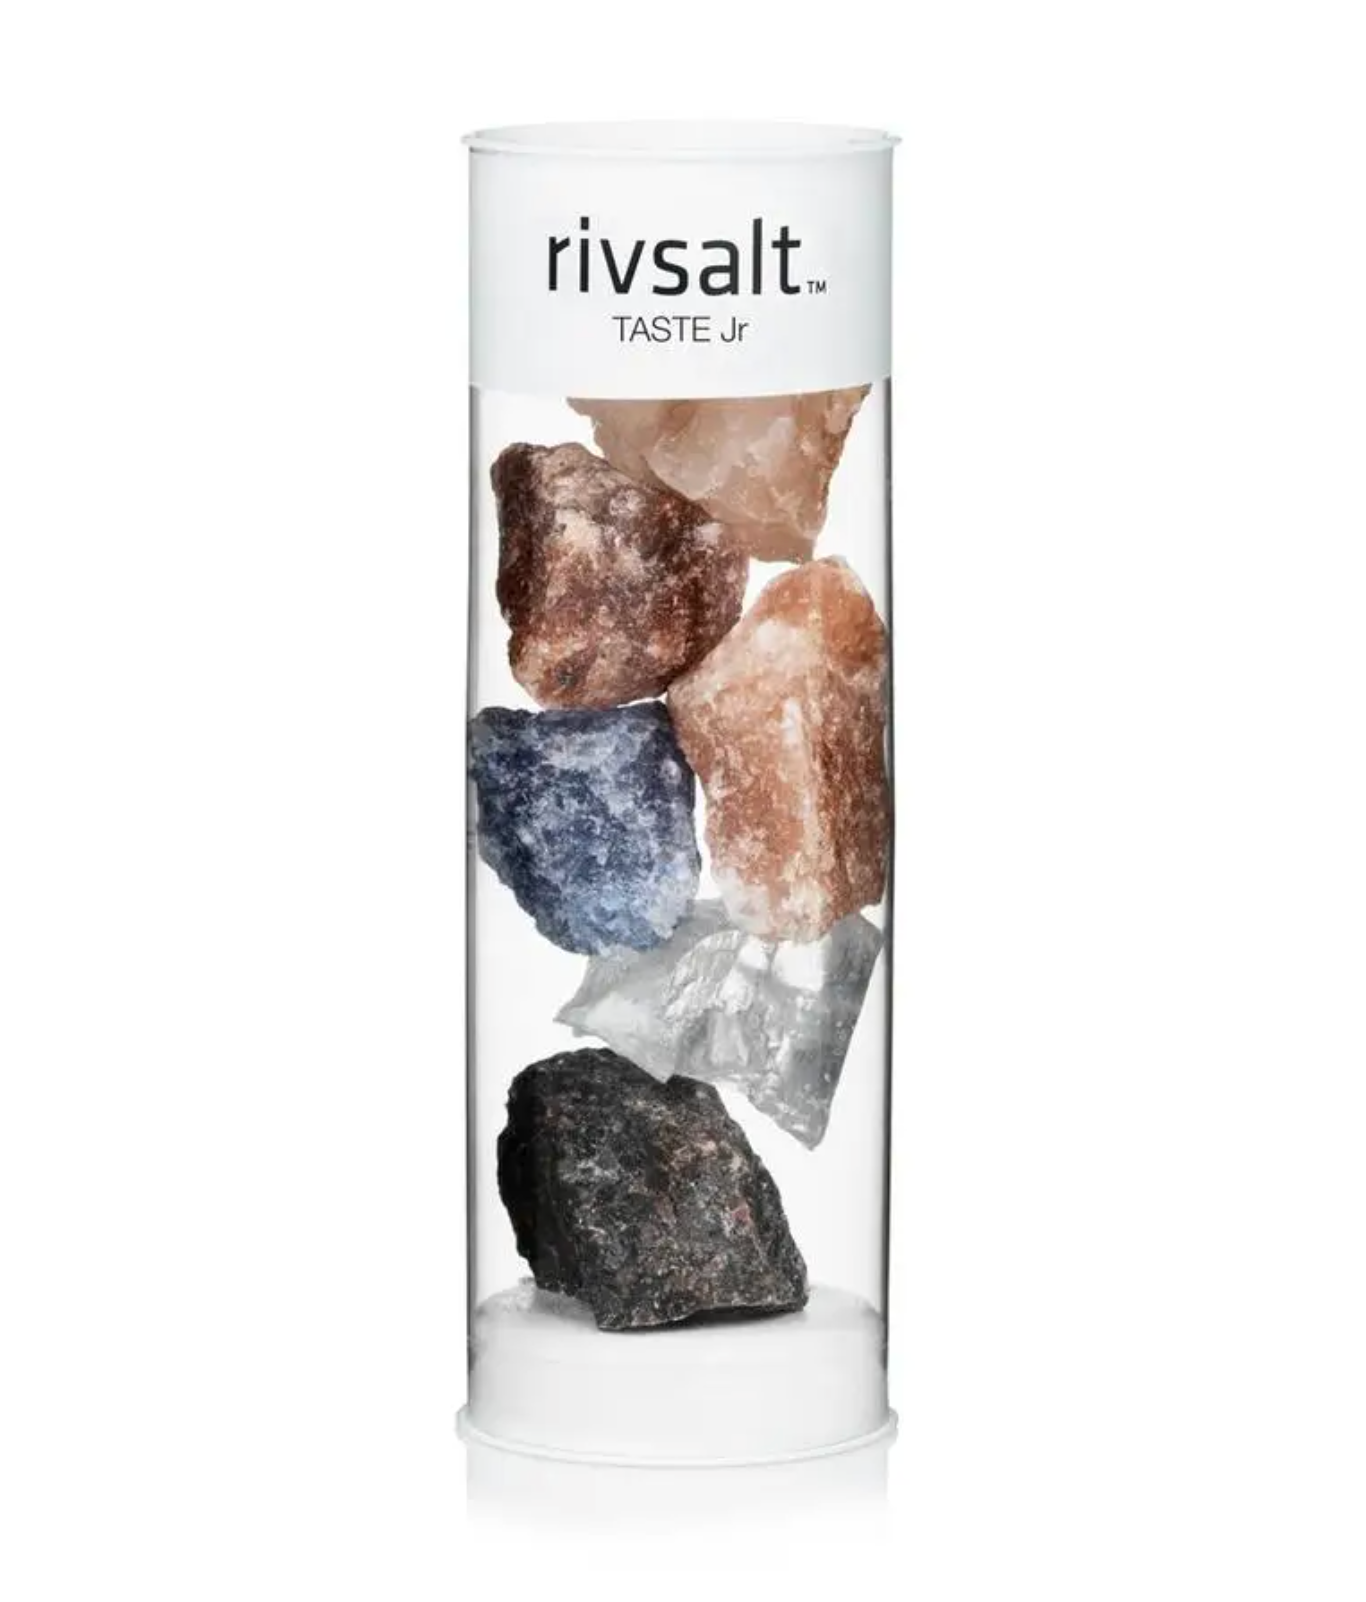 RIVSALT™ "Taste Jr" Rock Salt